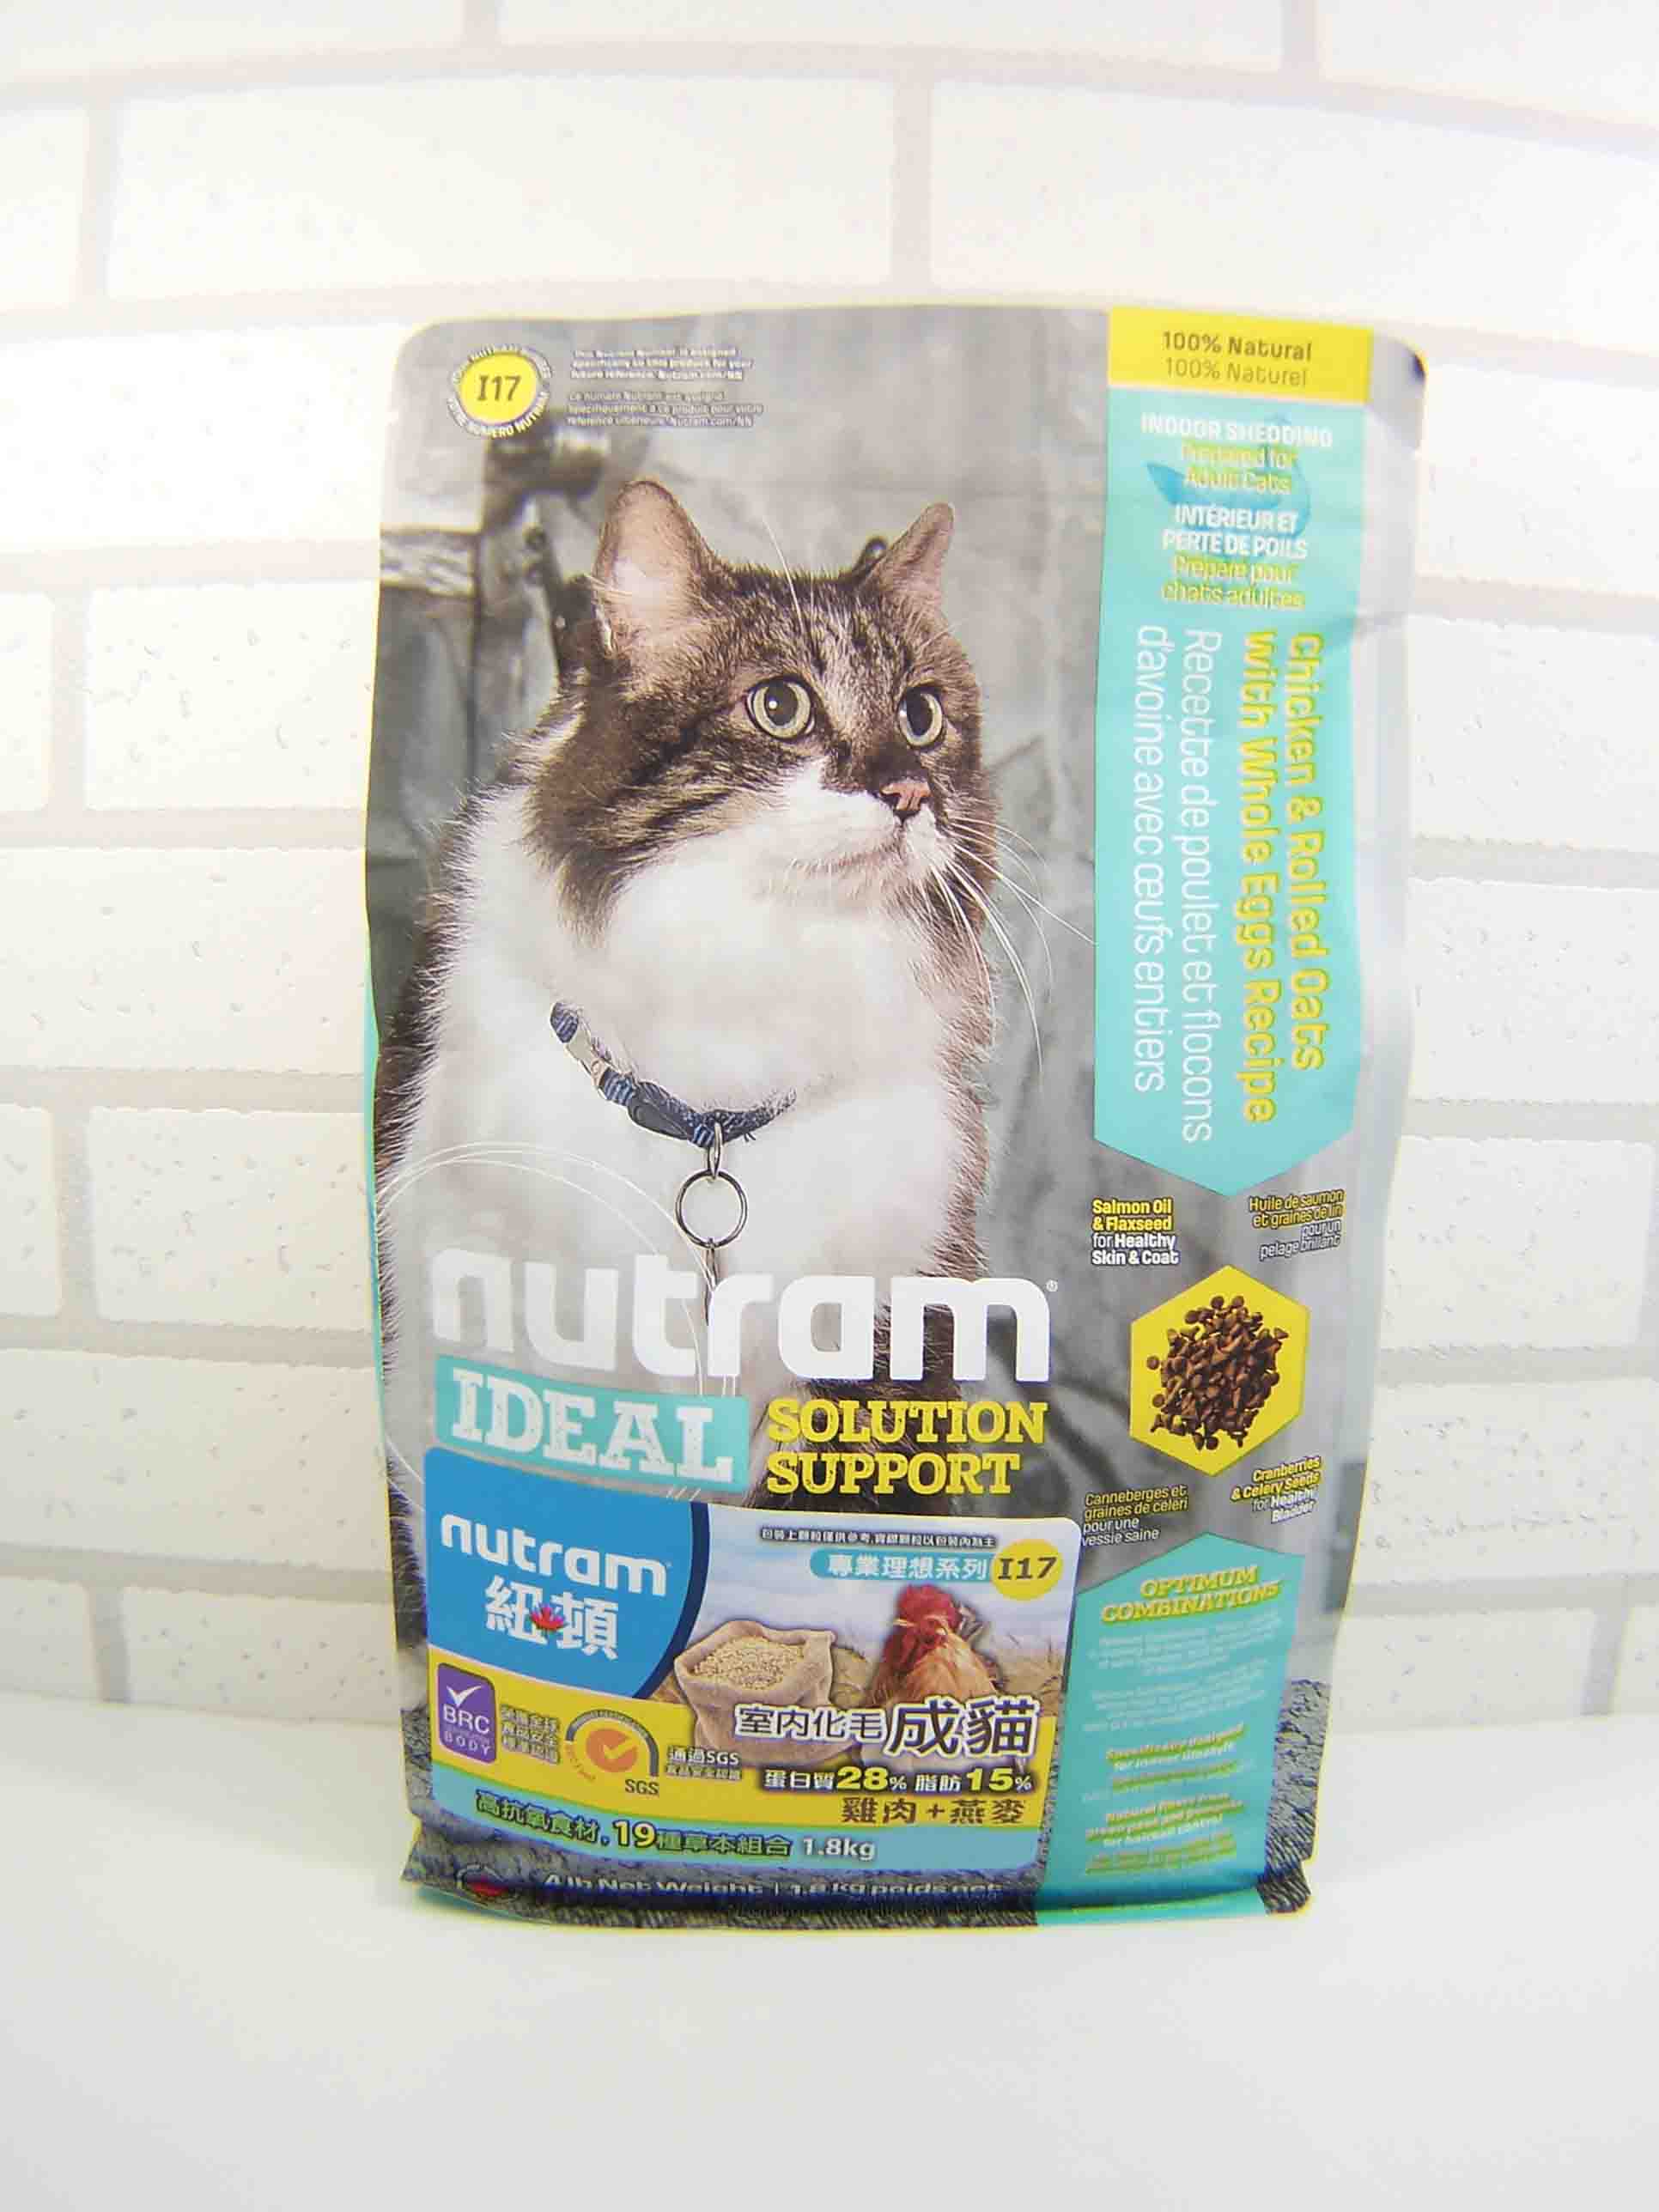 紐頓 I17室內化毛貓 雞肉燕麥I17 Nutram Ideal Solution Support Indoor Shedding Cat Food 6/1.8KG